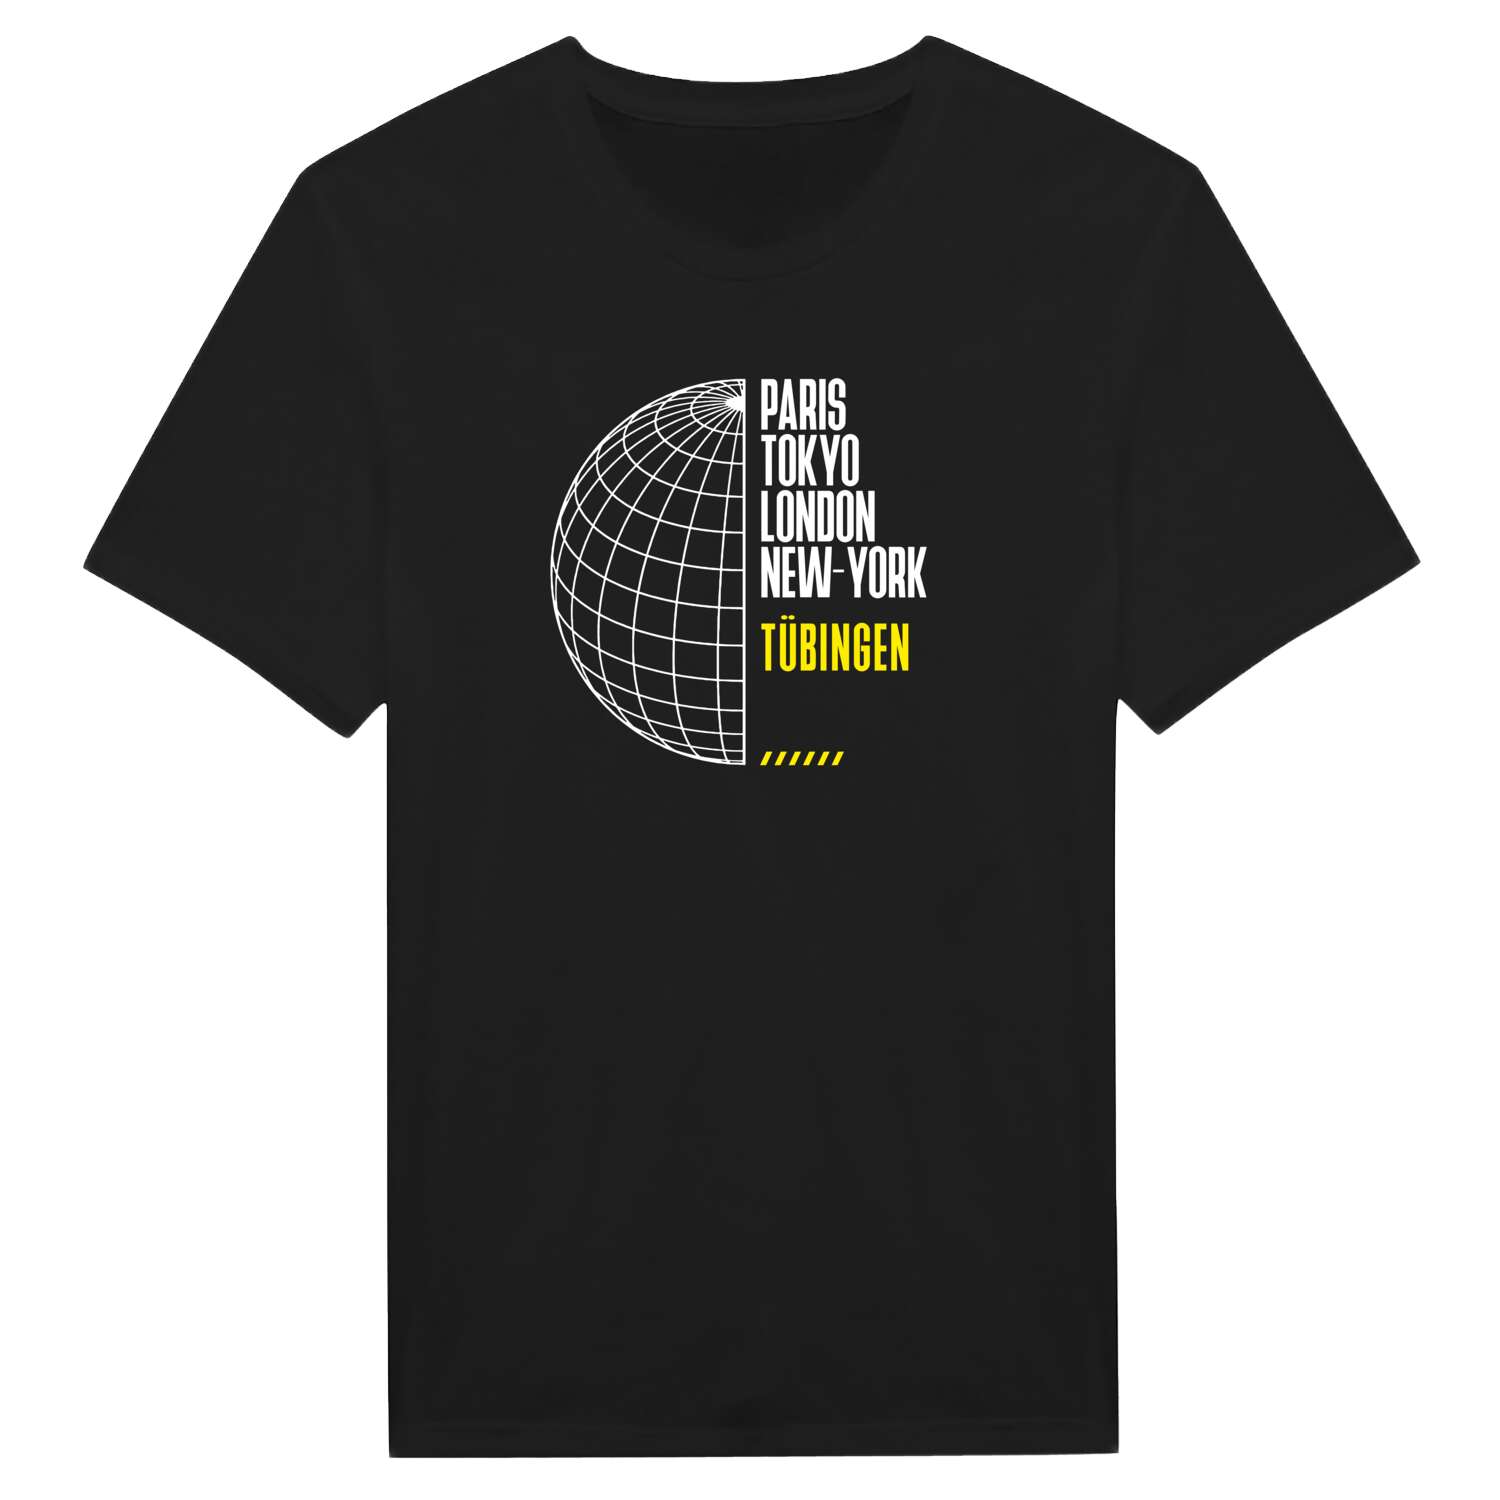 Tübingen T-Shirt »Paris Tokyo London«